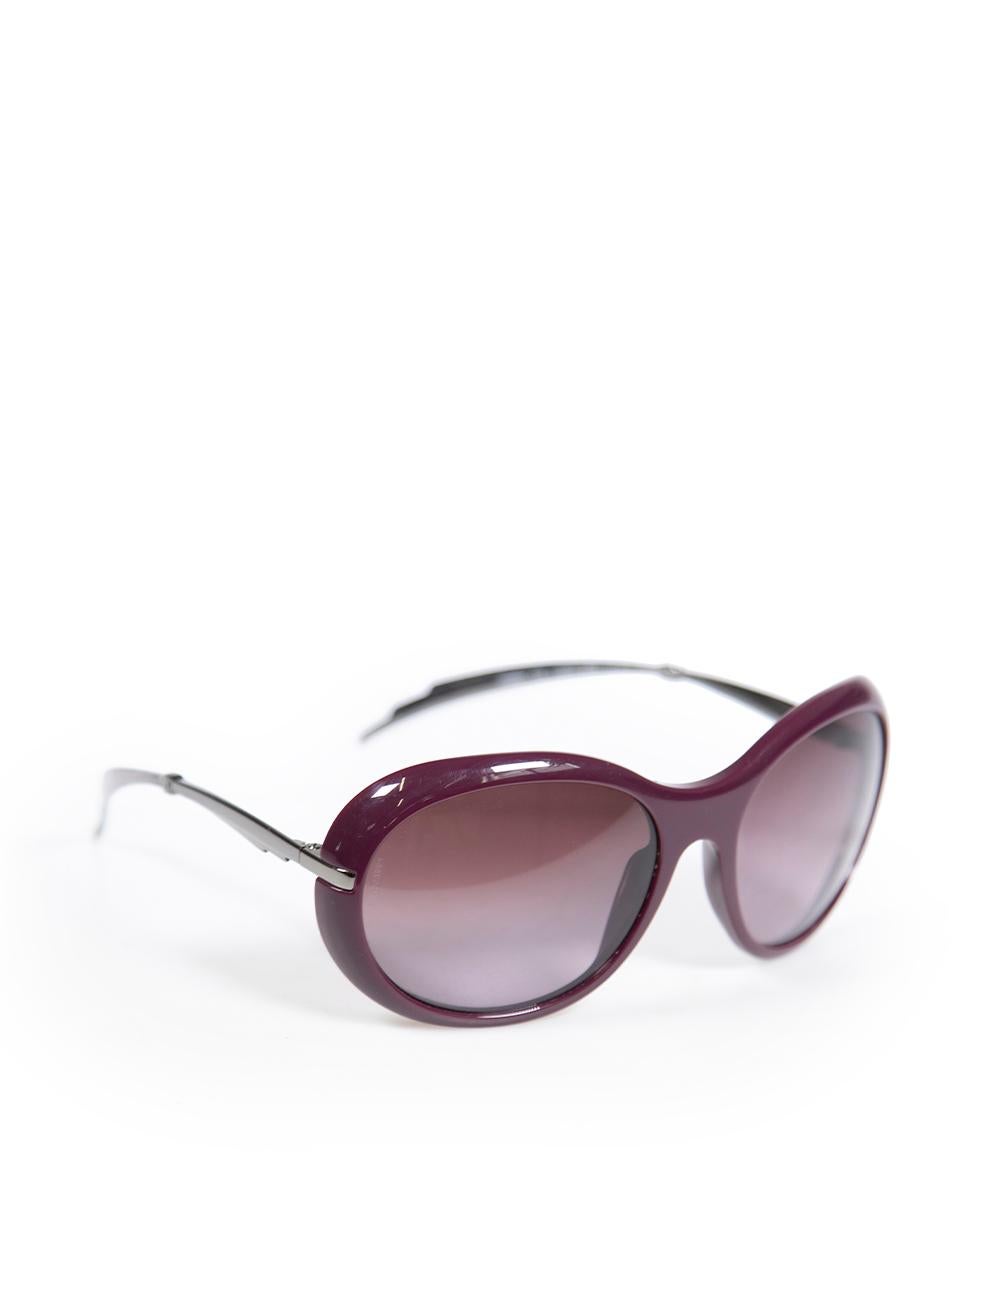 CONDIT ist sehr gut. Die Sonnenbrille weist nur minimale Gebrauchsspuren auf. Minimale Abnutzung des Rahmens mit sehr leichten Kratzern auf diesem gebrauchten Chanel Designer Wiederverkauf Artikel.
 
 
 
 Einzelheiten
 
 
 Modell C1068/3L
 
 Lila
 
